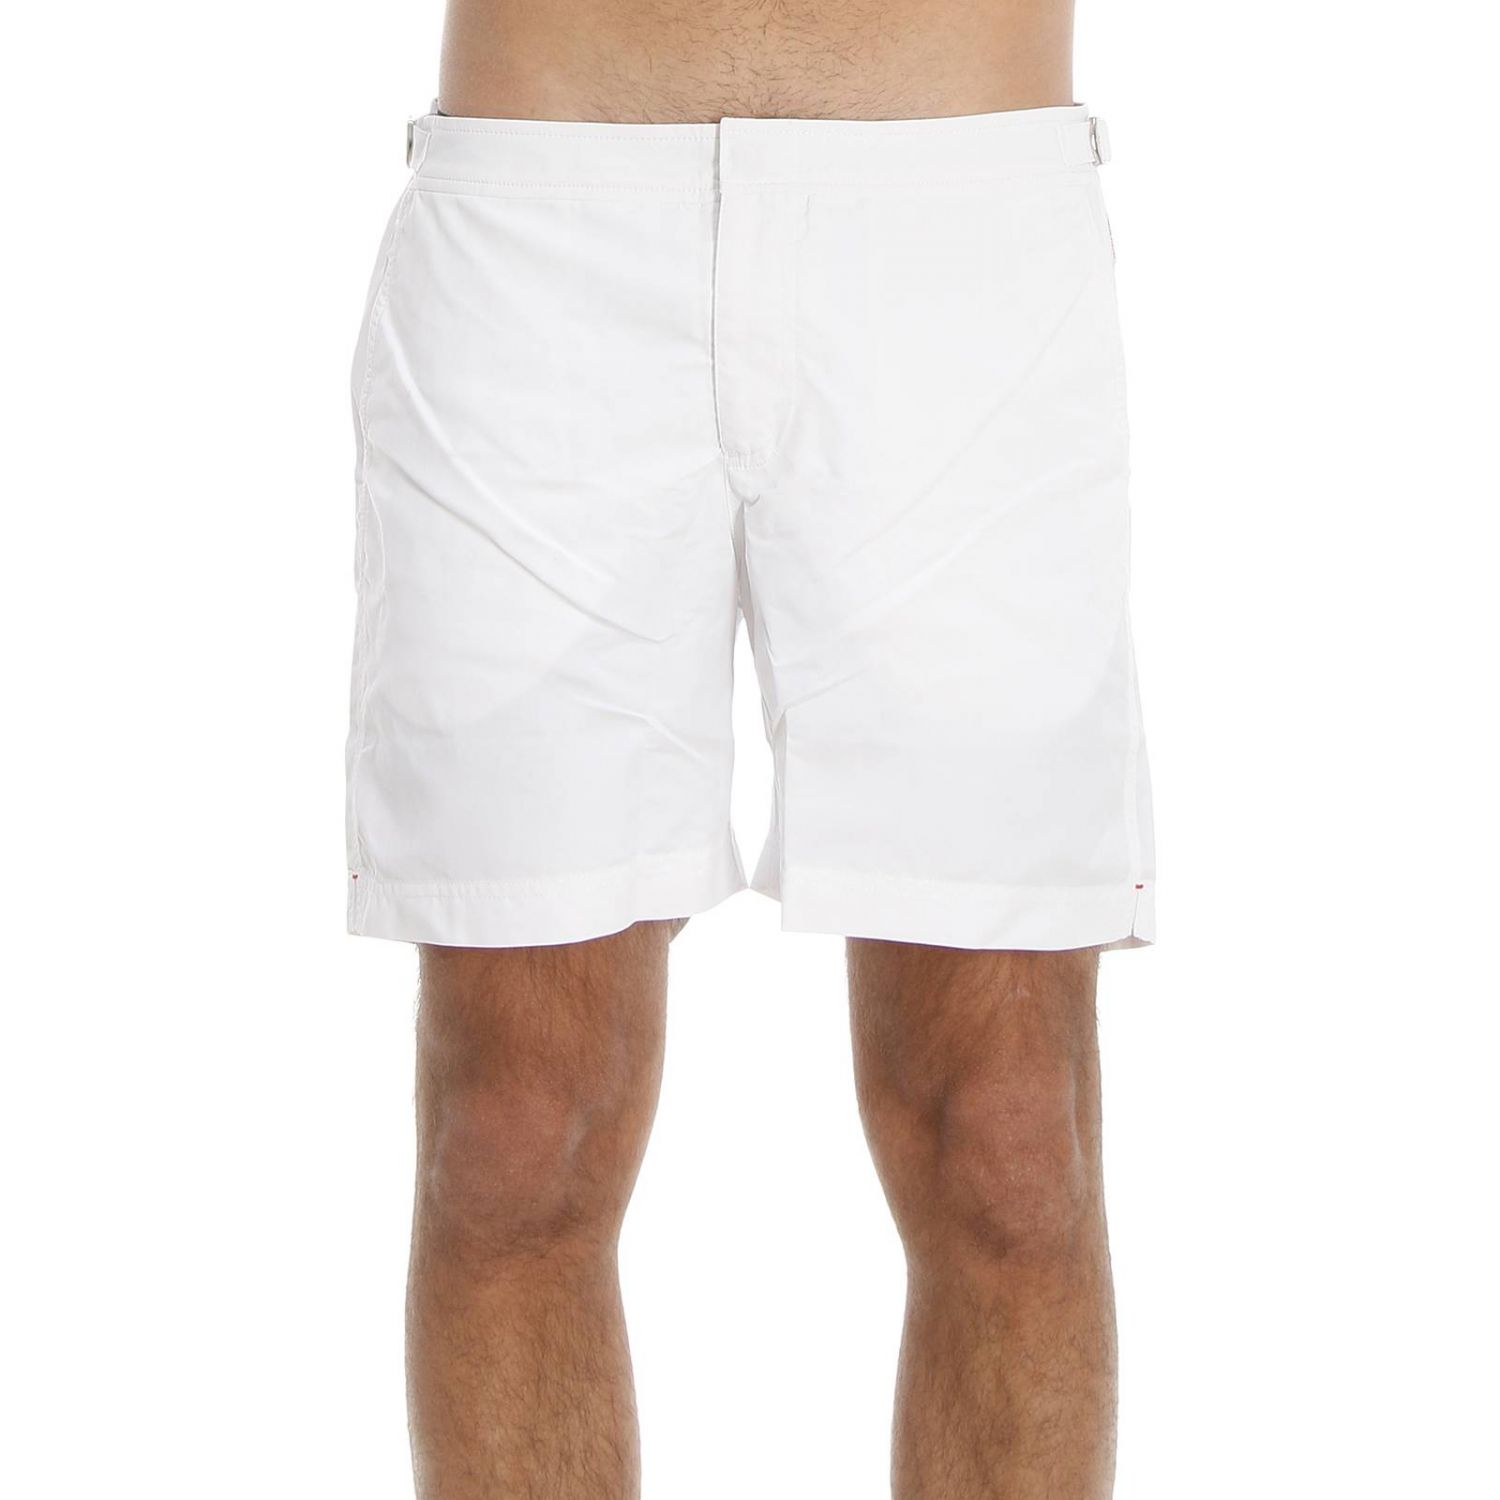 Orlebar Brown Outlet: Swimwear man | Swimsuit Orlebar Brown Men White ...